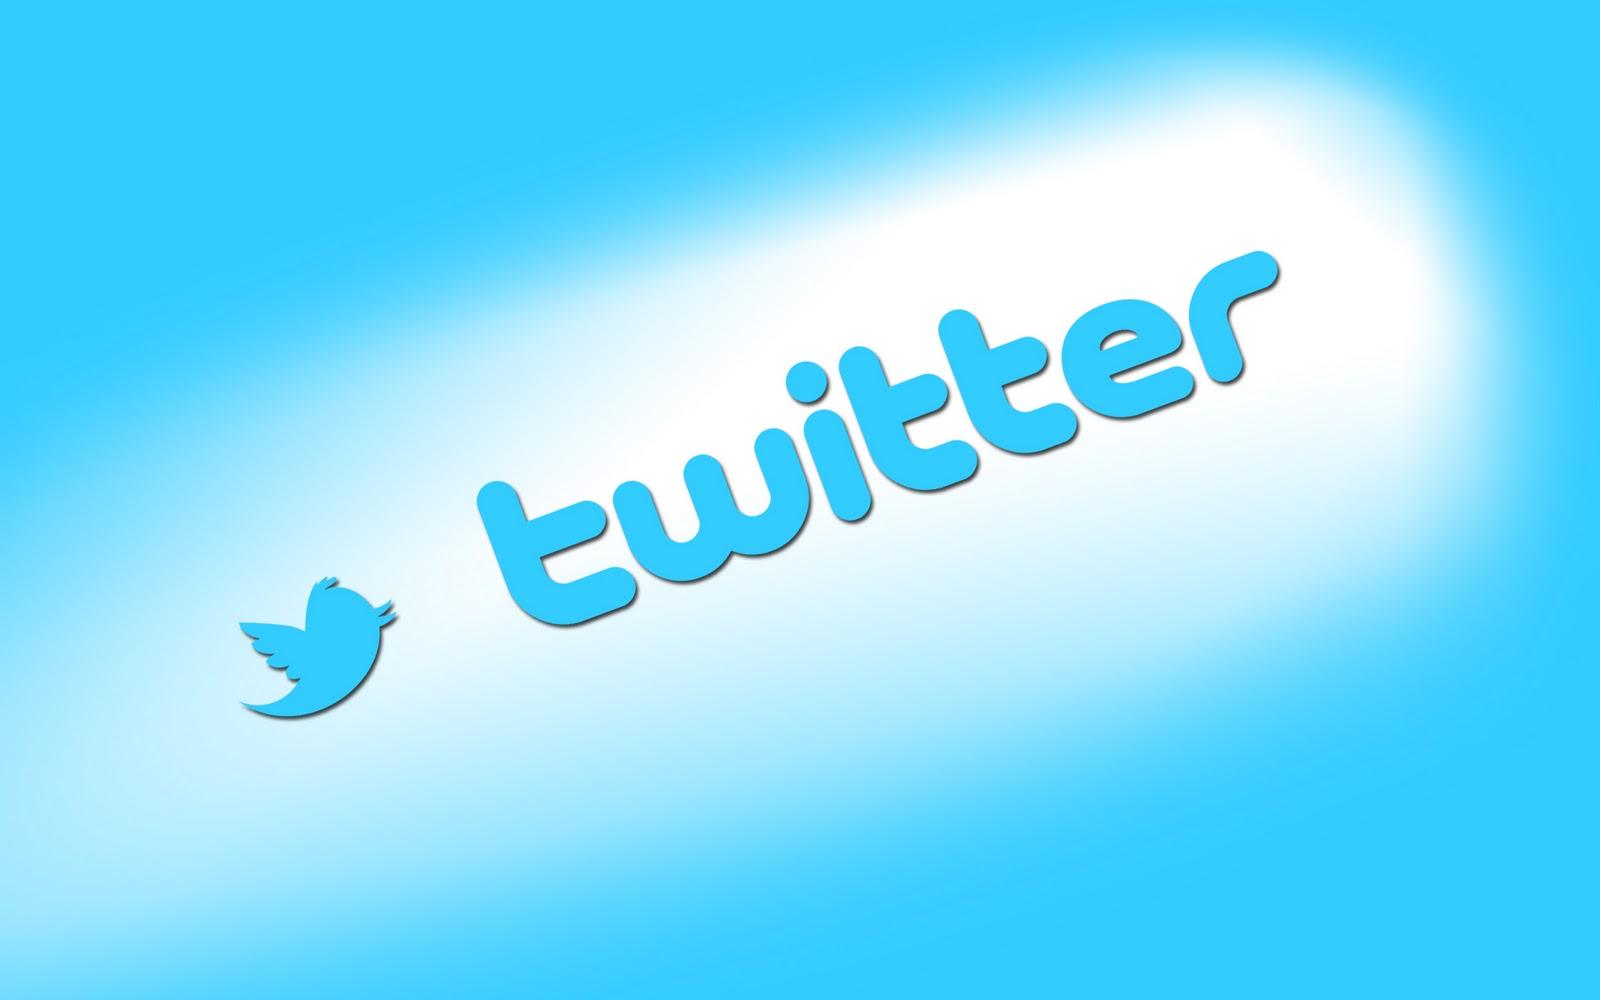 Logo de Twitter con fondo azul